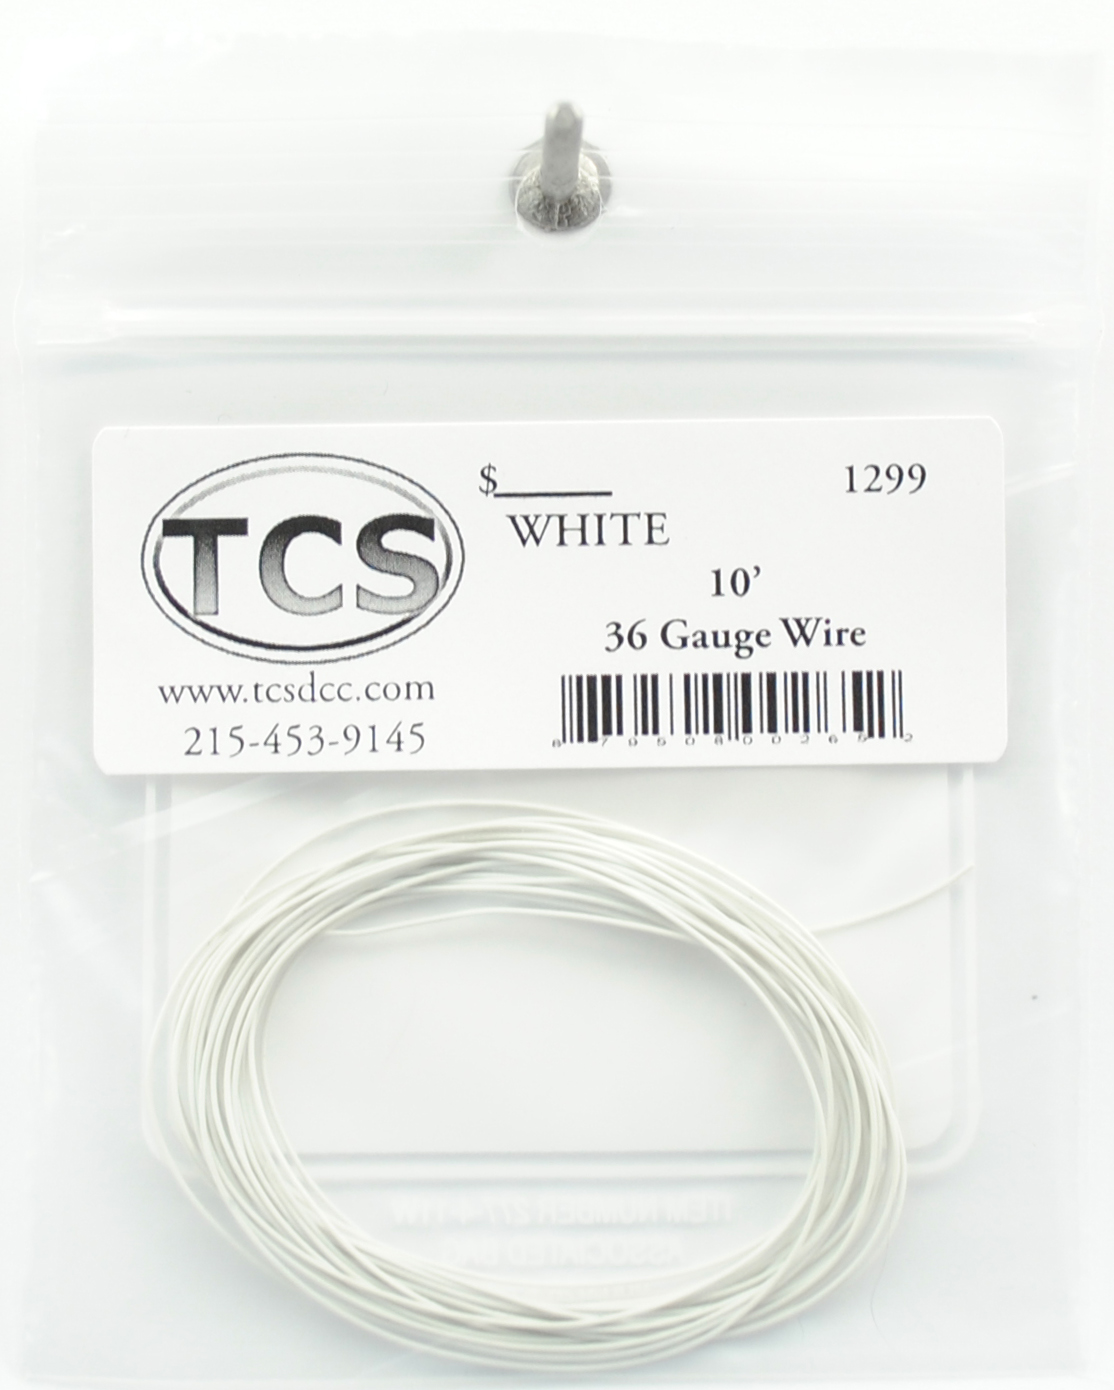 10ft 36 Gauge White Wire